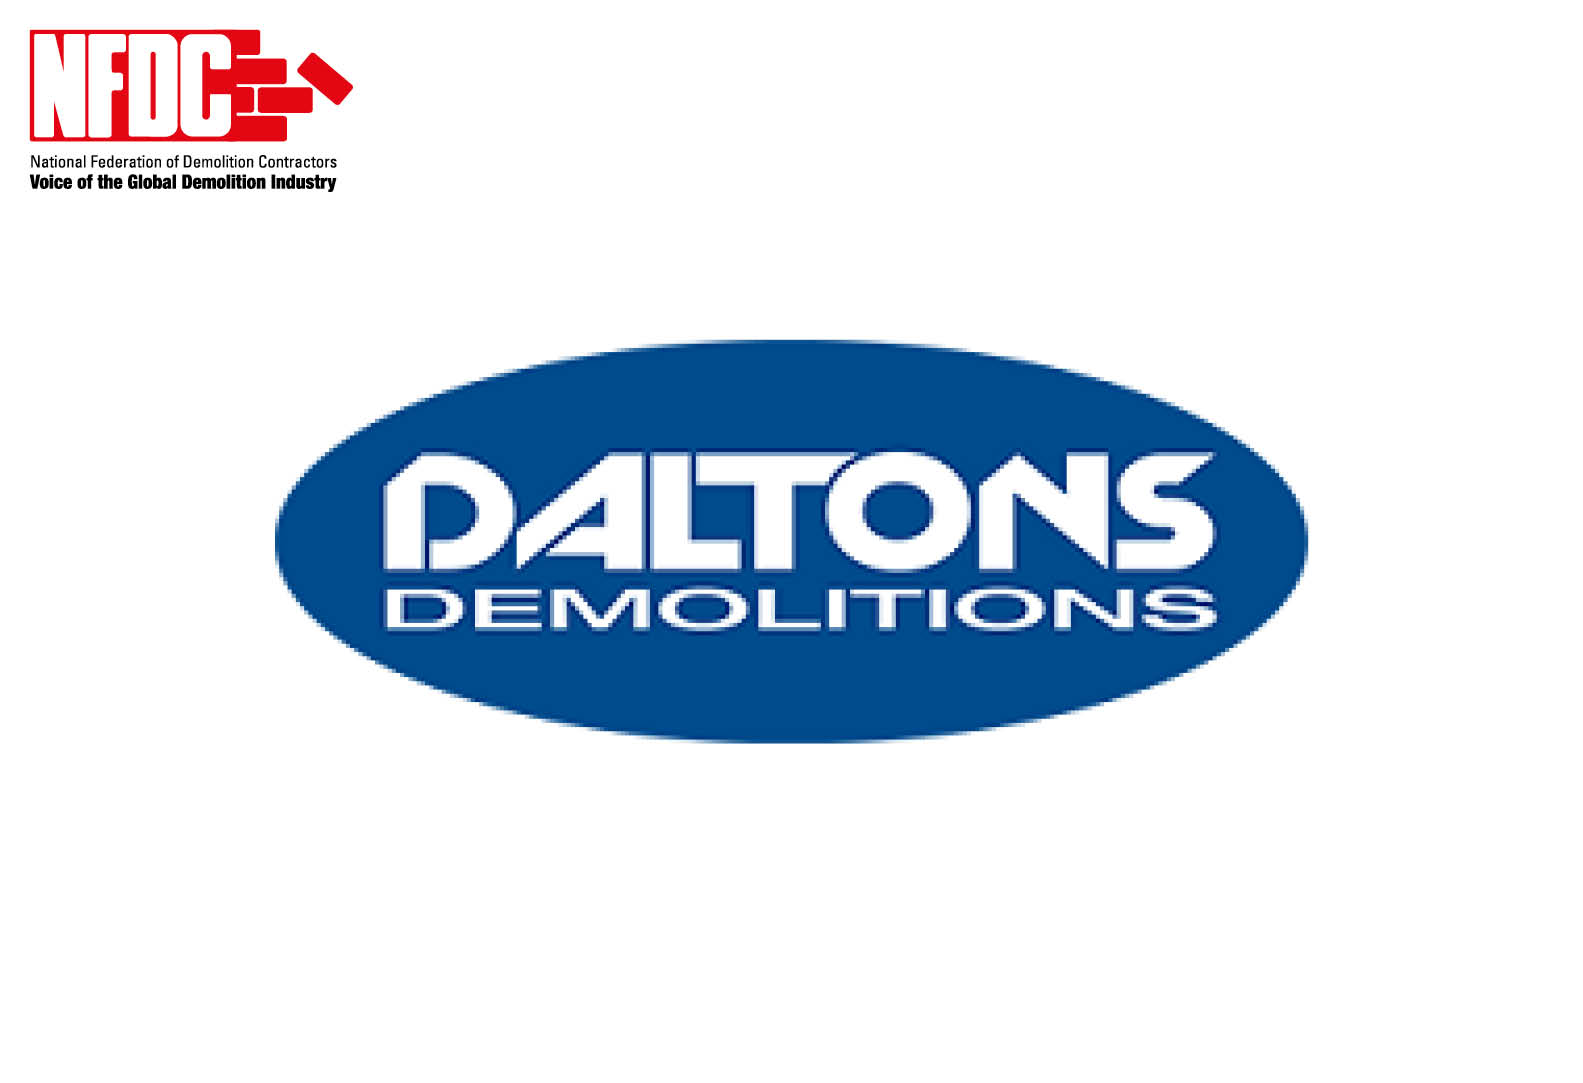 Daltons Demolitions Ltd